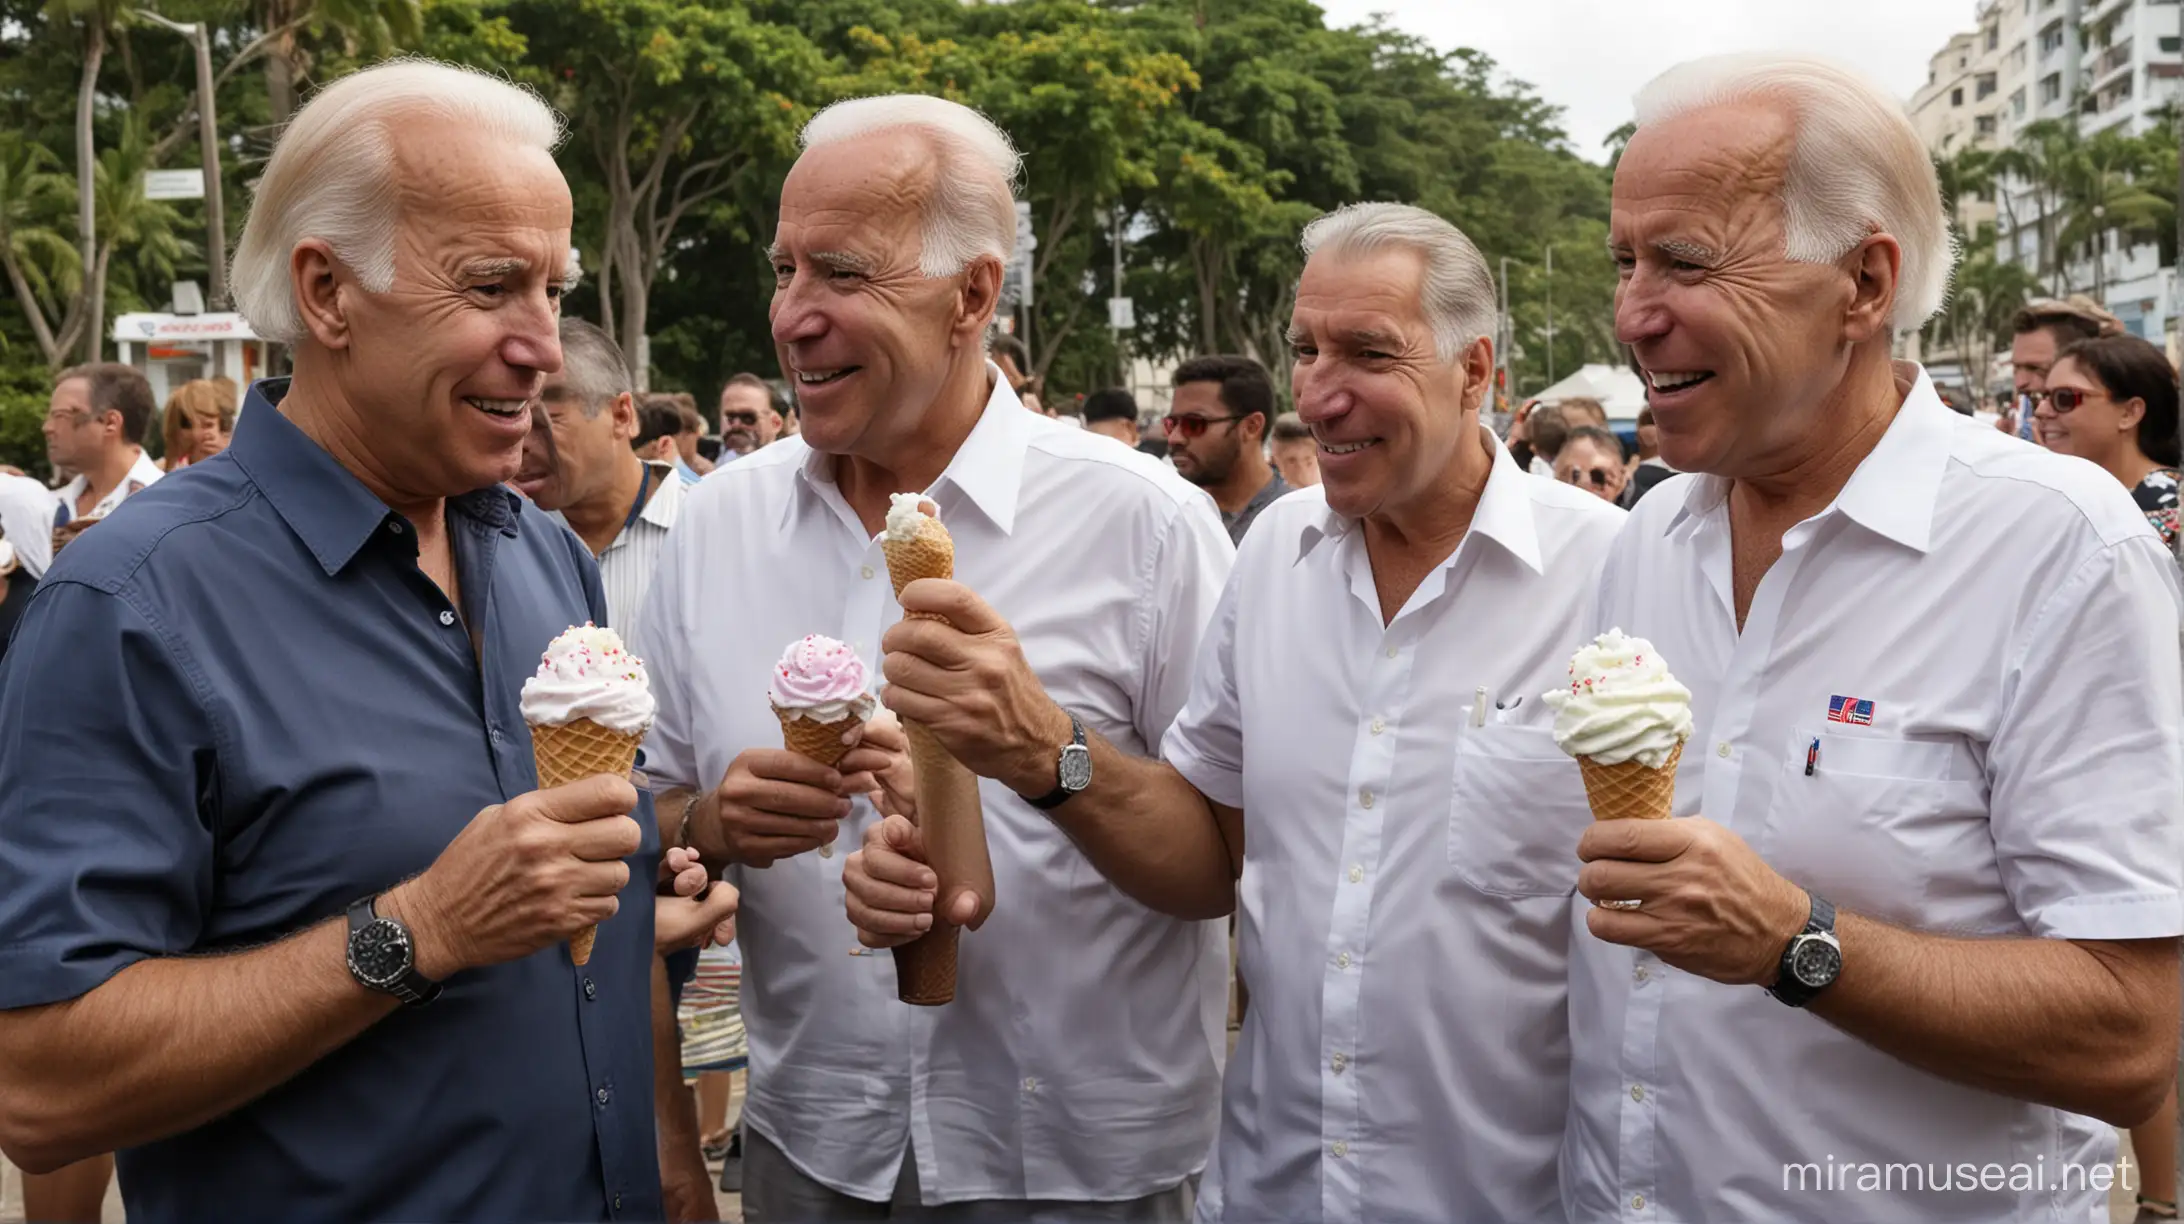 Joe Biden and Jeffrey Epstein Enjoying Ice Cream in Rio de Janeiro